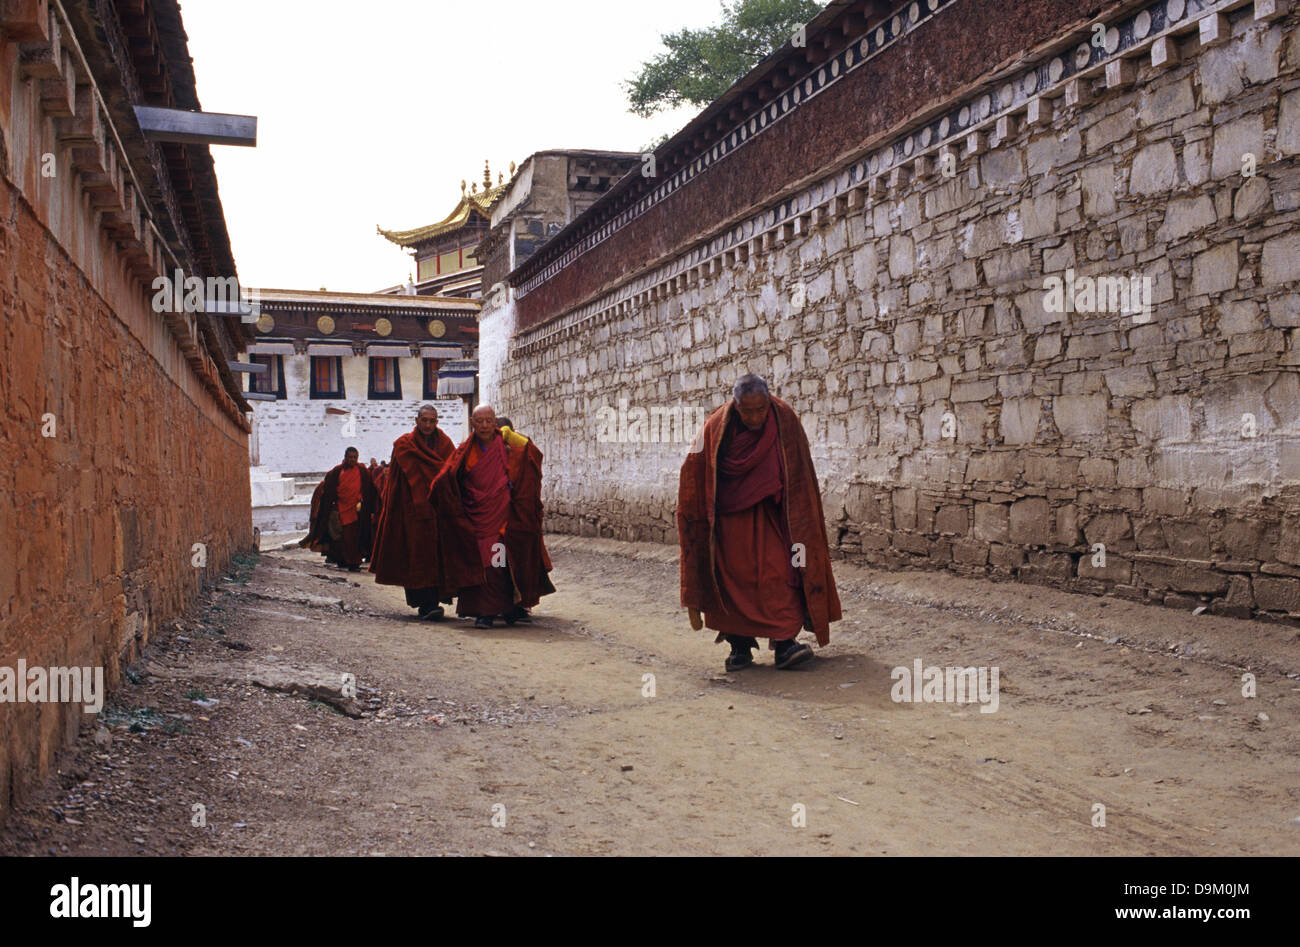 Monaci Tibetani in Labuleng Si o monastero Labrang uno dei sei grandi monasteri della scuola Gelug del buddhismo tibetano situato ai piedi della montagna di Phoenix a nord-ovest della contea di Xiahe in tibetano Gannan nazionalità prefettura autonoma, provincia di Gansu in Cina Foto Stock